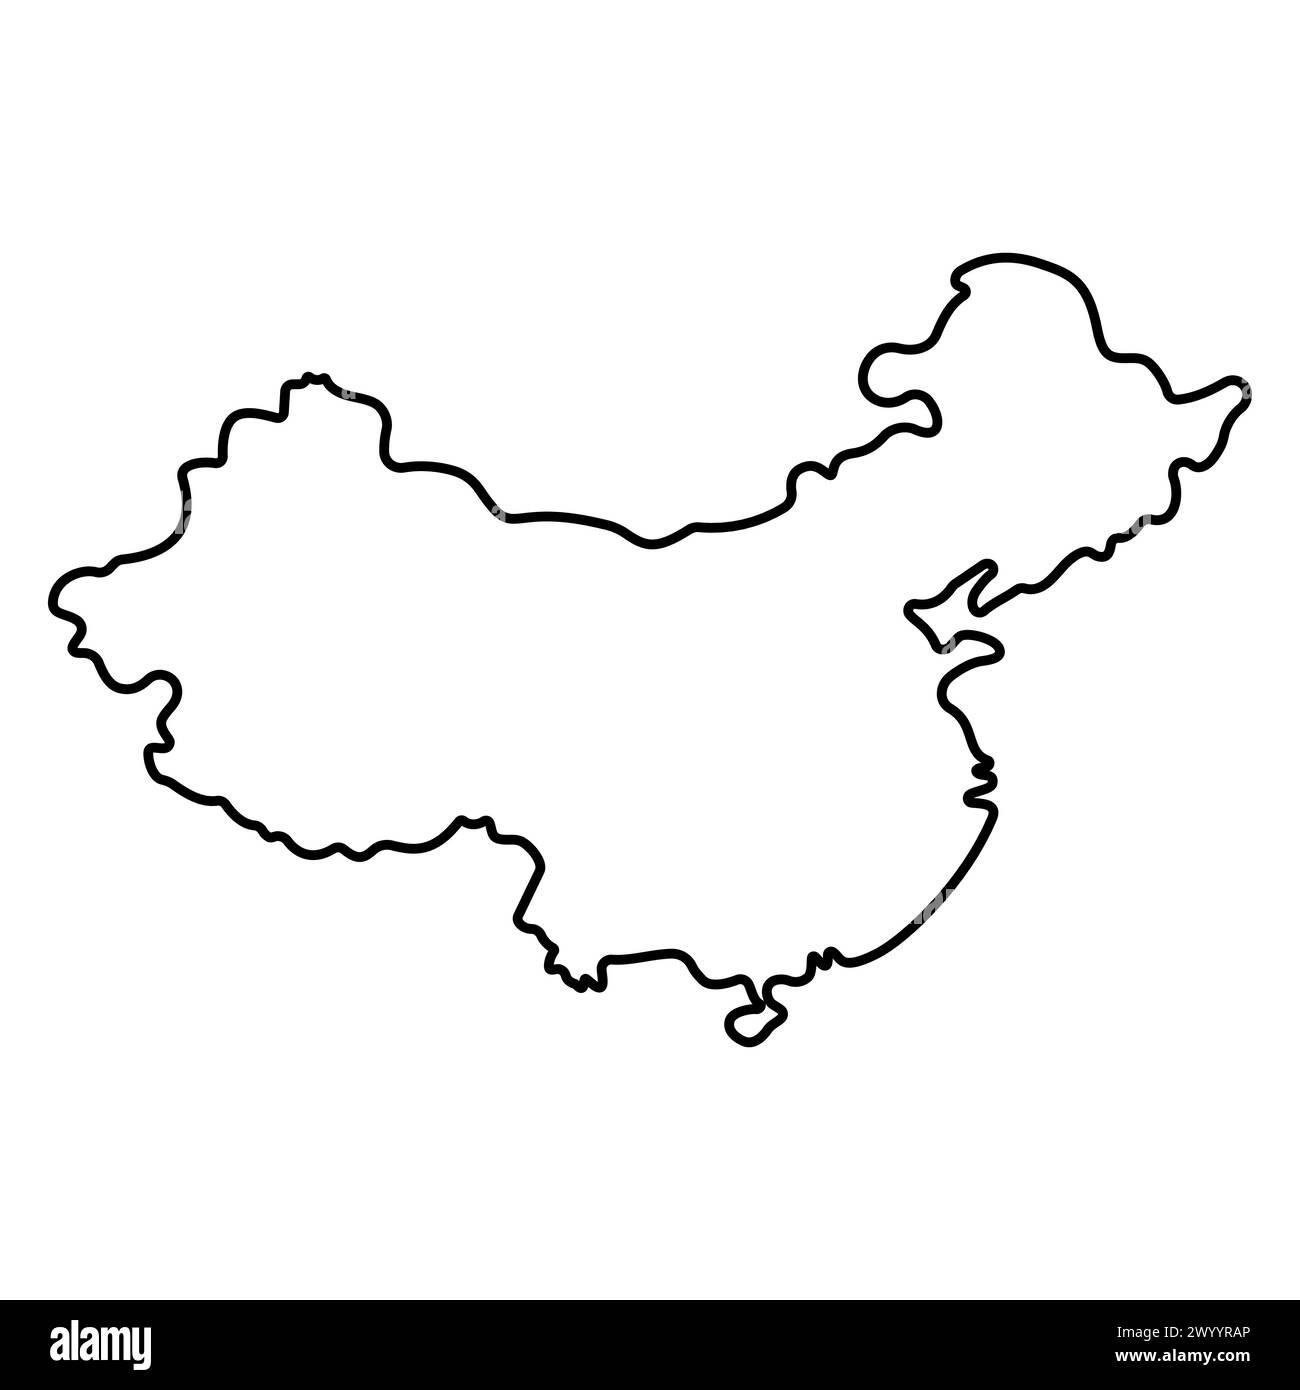 China auf der Weltkarte Symbol. Line Doodle Element isoliert auf weißem Hintergrund. Geografische Lage des Standorts. Ostasien. Der südöstliche Teil des eurasischen c Stock Vektor